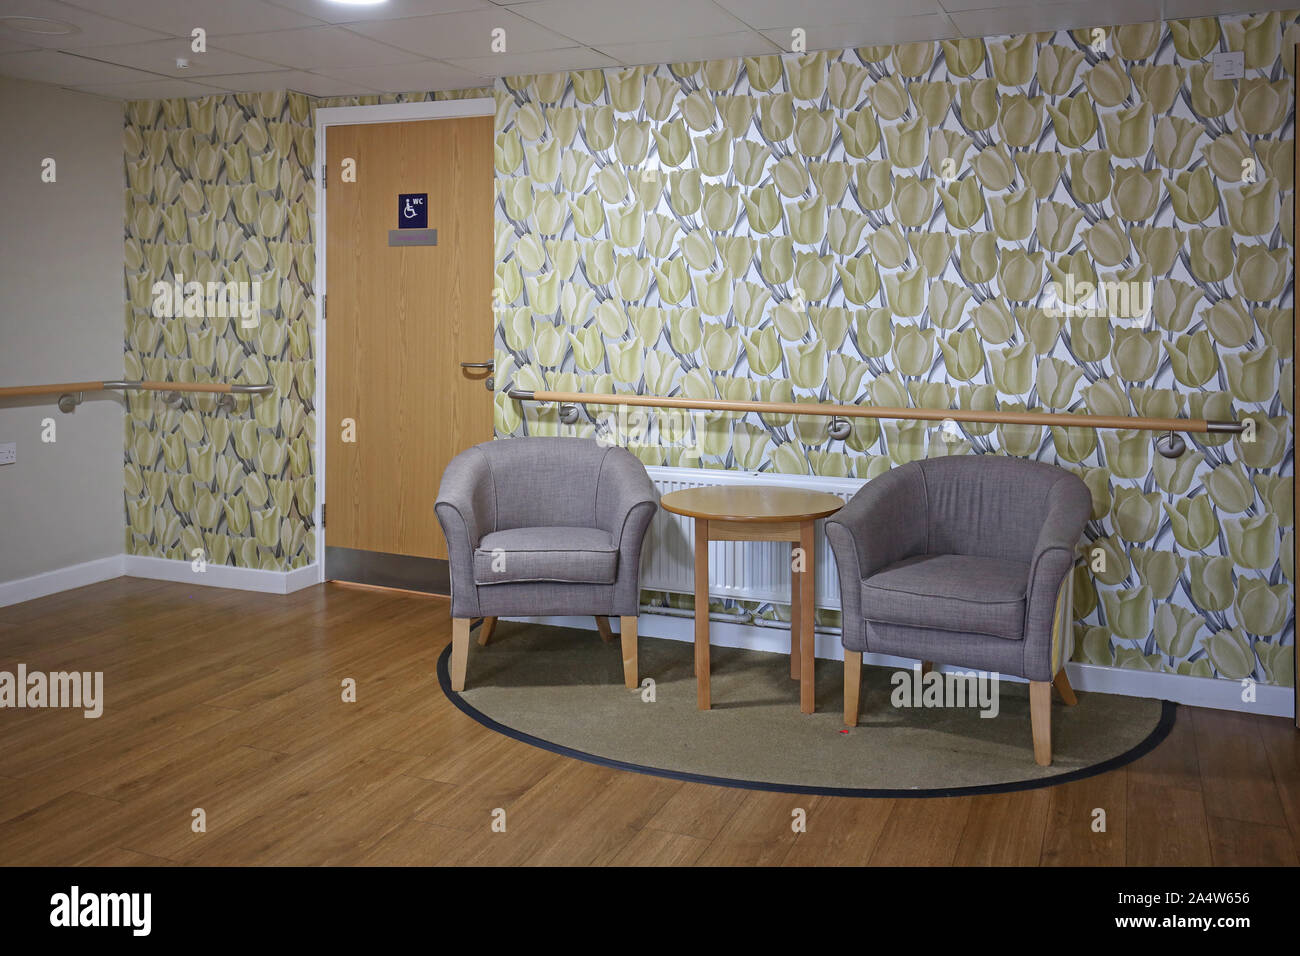 Innenraum eines neu renovierten Care Home in der Nähe von Wakefield, Großbritannien. Zeigt Korridor Sitzecke mit hellen Tapeten, Sesseln und Sicherheit Handläufe. Stockfoto